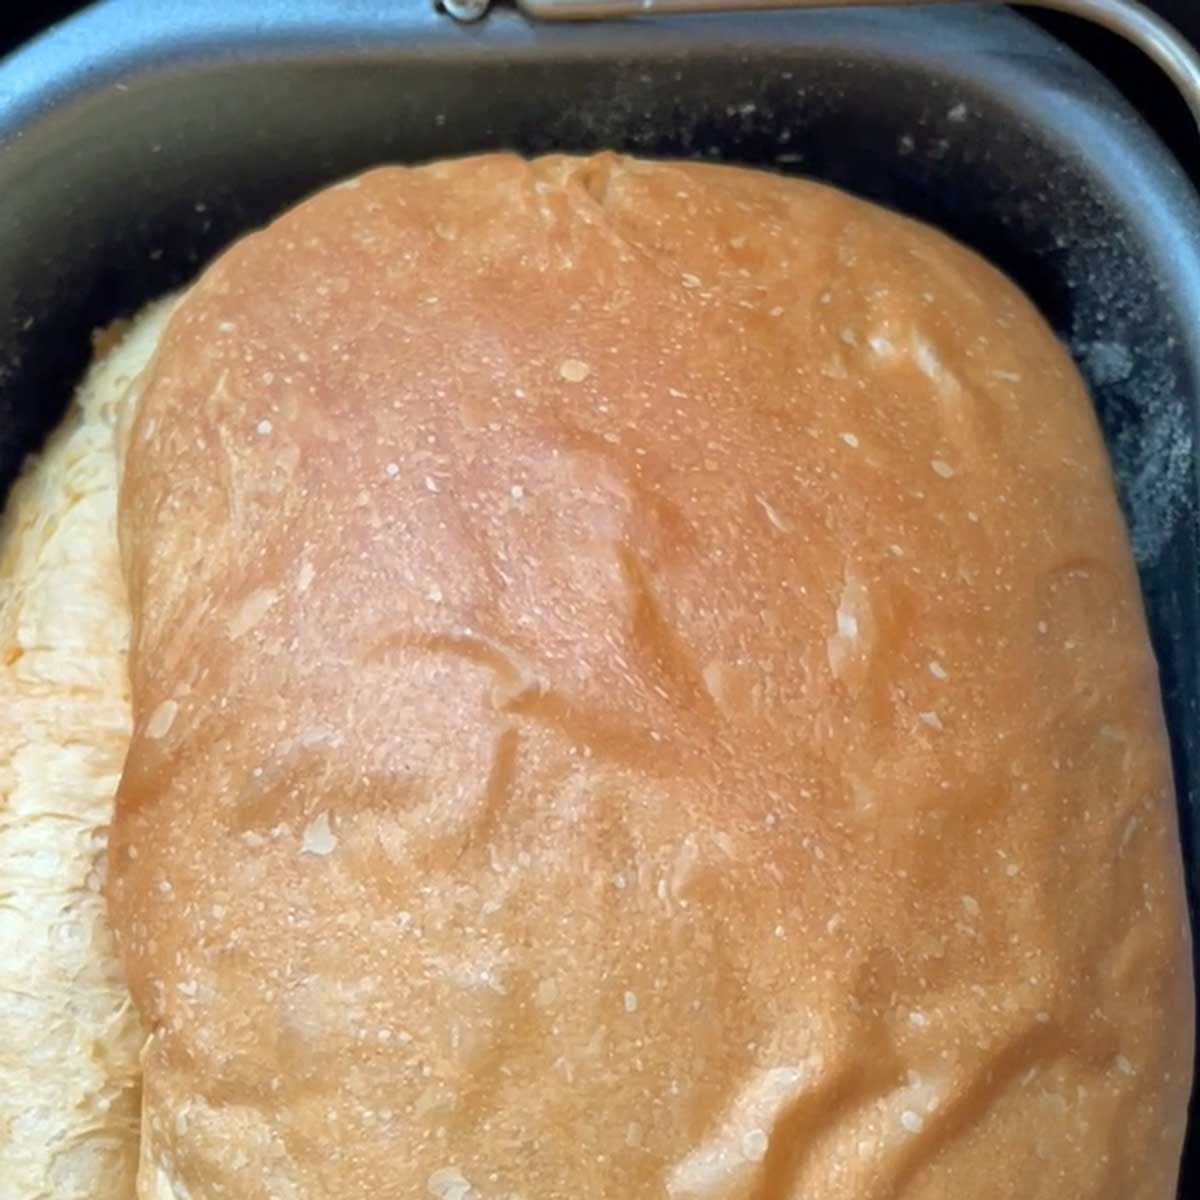 Buttermilk bread baked.